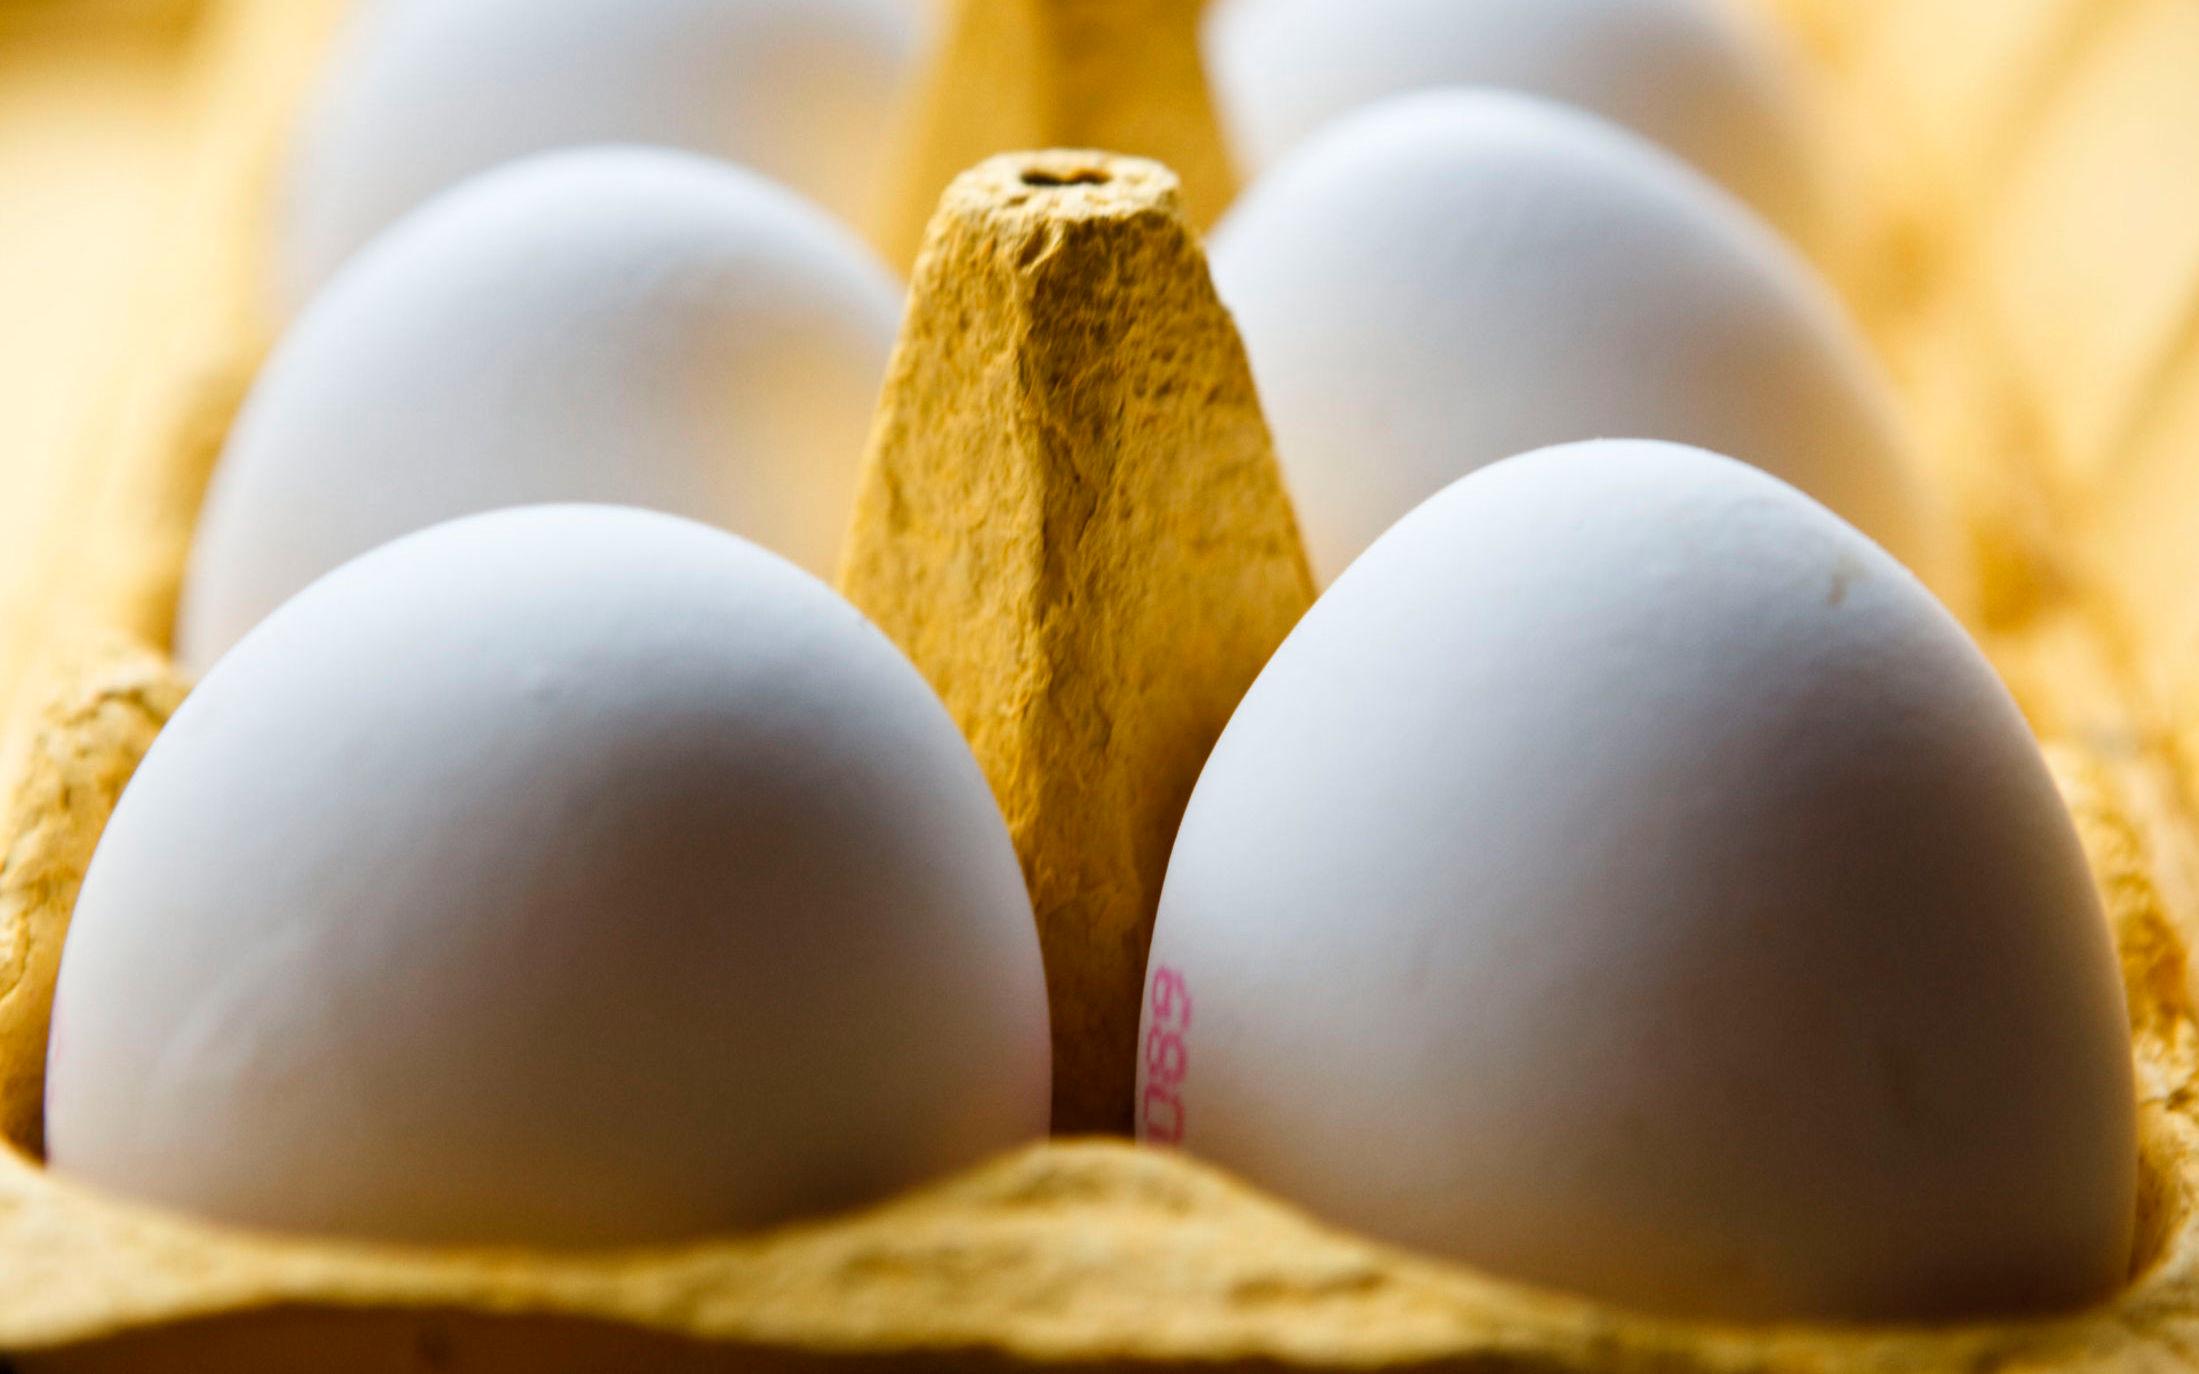 GODT RÅTT: Egg kan faktisk fryses rå, og holder omtrent én måned. Foto: Cornelius Poppe/NTB Scanpix.